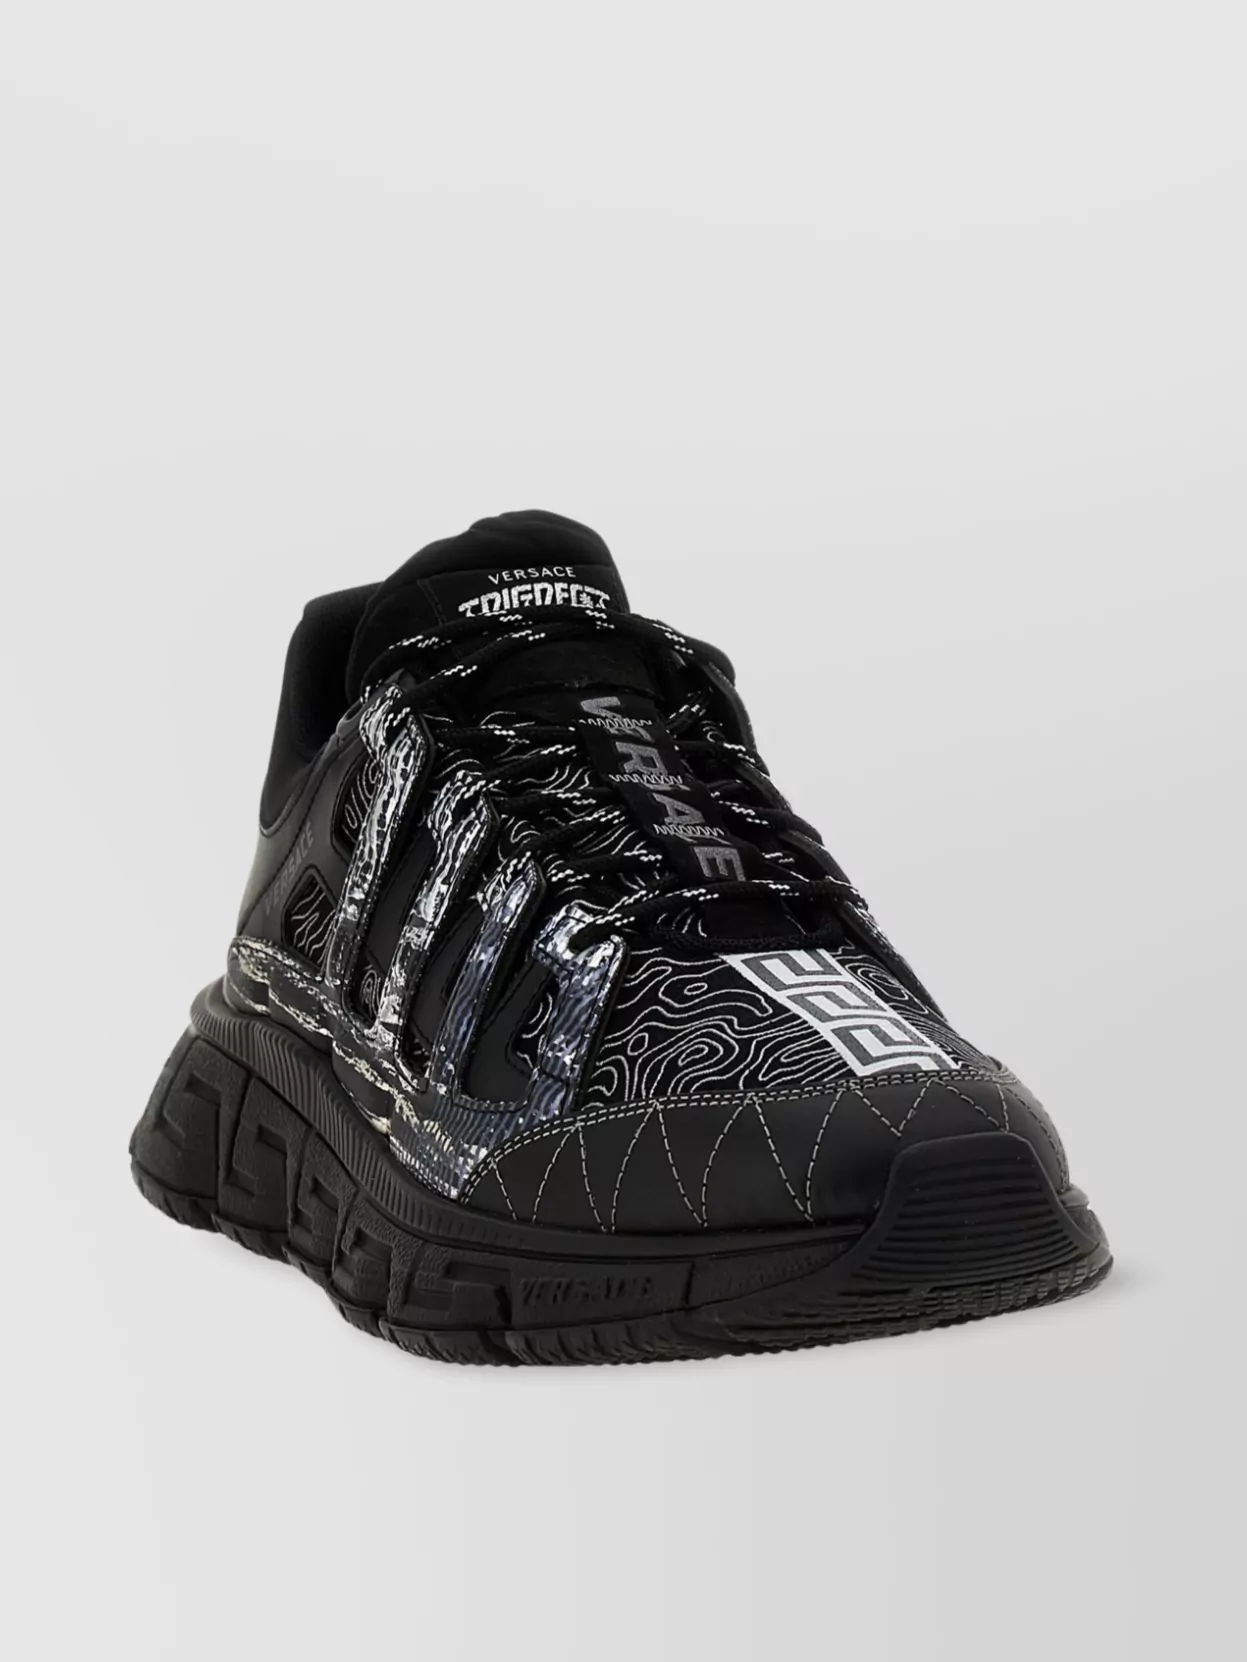 Versace Trigreca Low Top Sneakers In Black